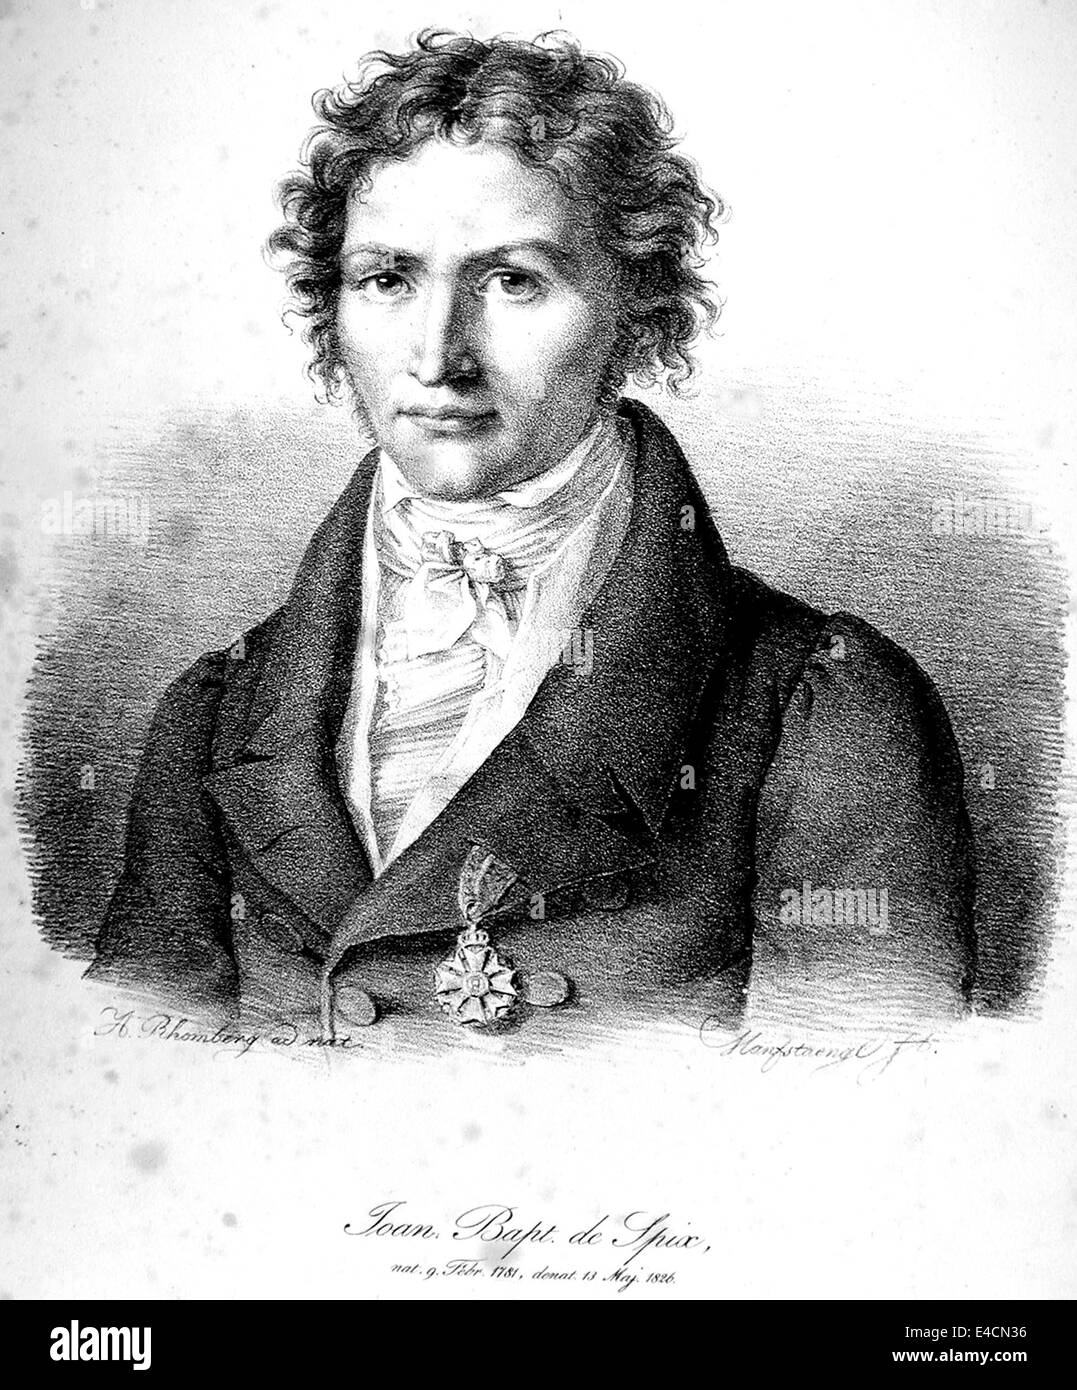 JOHANN BAPTIST von SPIX (1781-1826) biólogo alemán Foto de stock